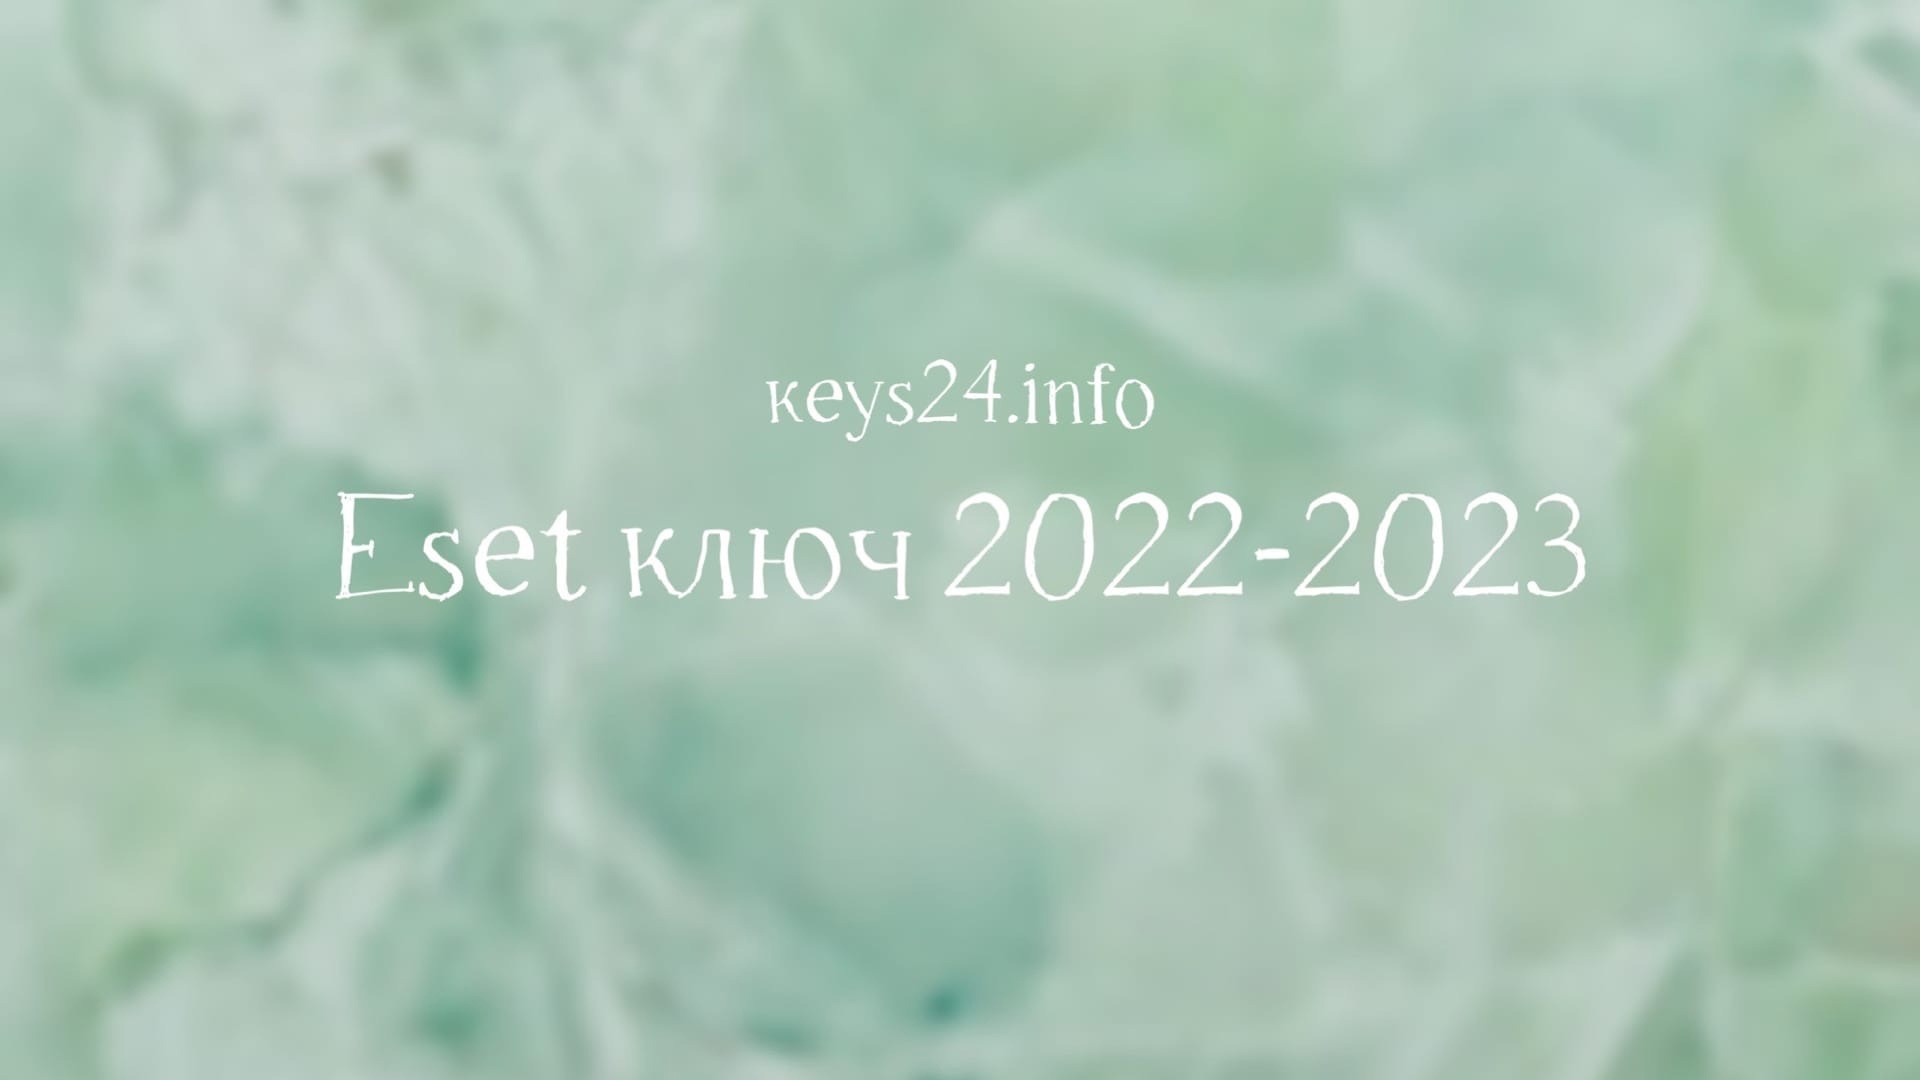 esetkey2022-2023